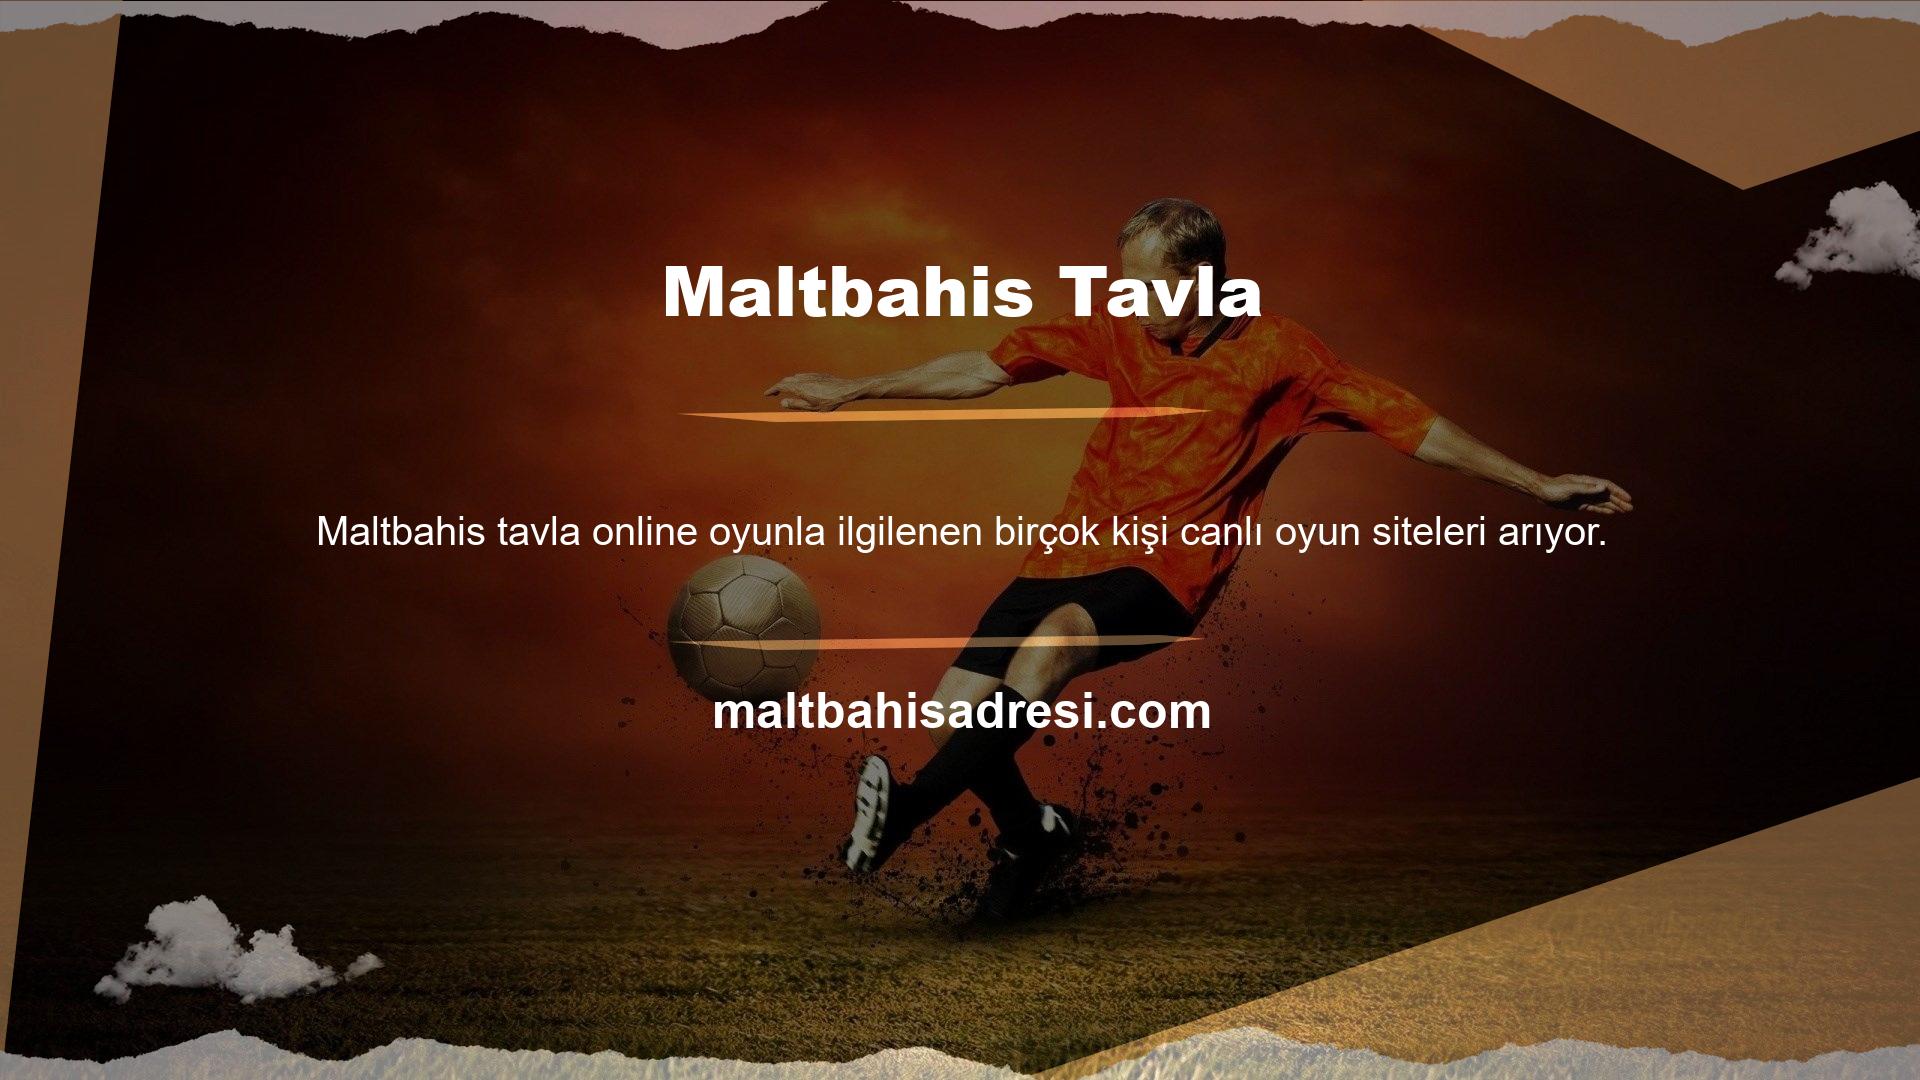 Şu anda Maltbahis çevrimiçi oyun sitesinde gerçek veya sanal ortamlarda oynanabilen çok sayıda çevrimiçi oyun bulunmaktadır